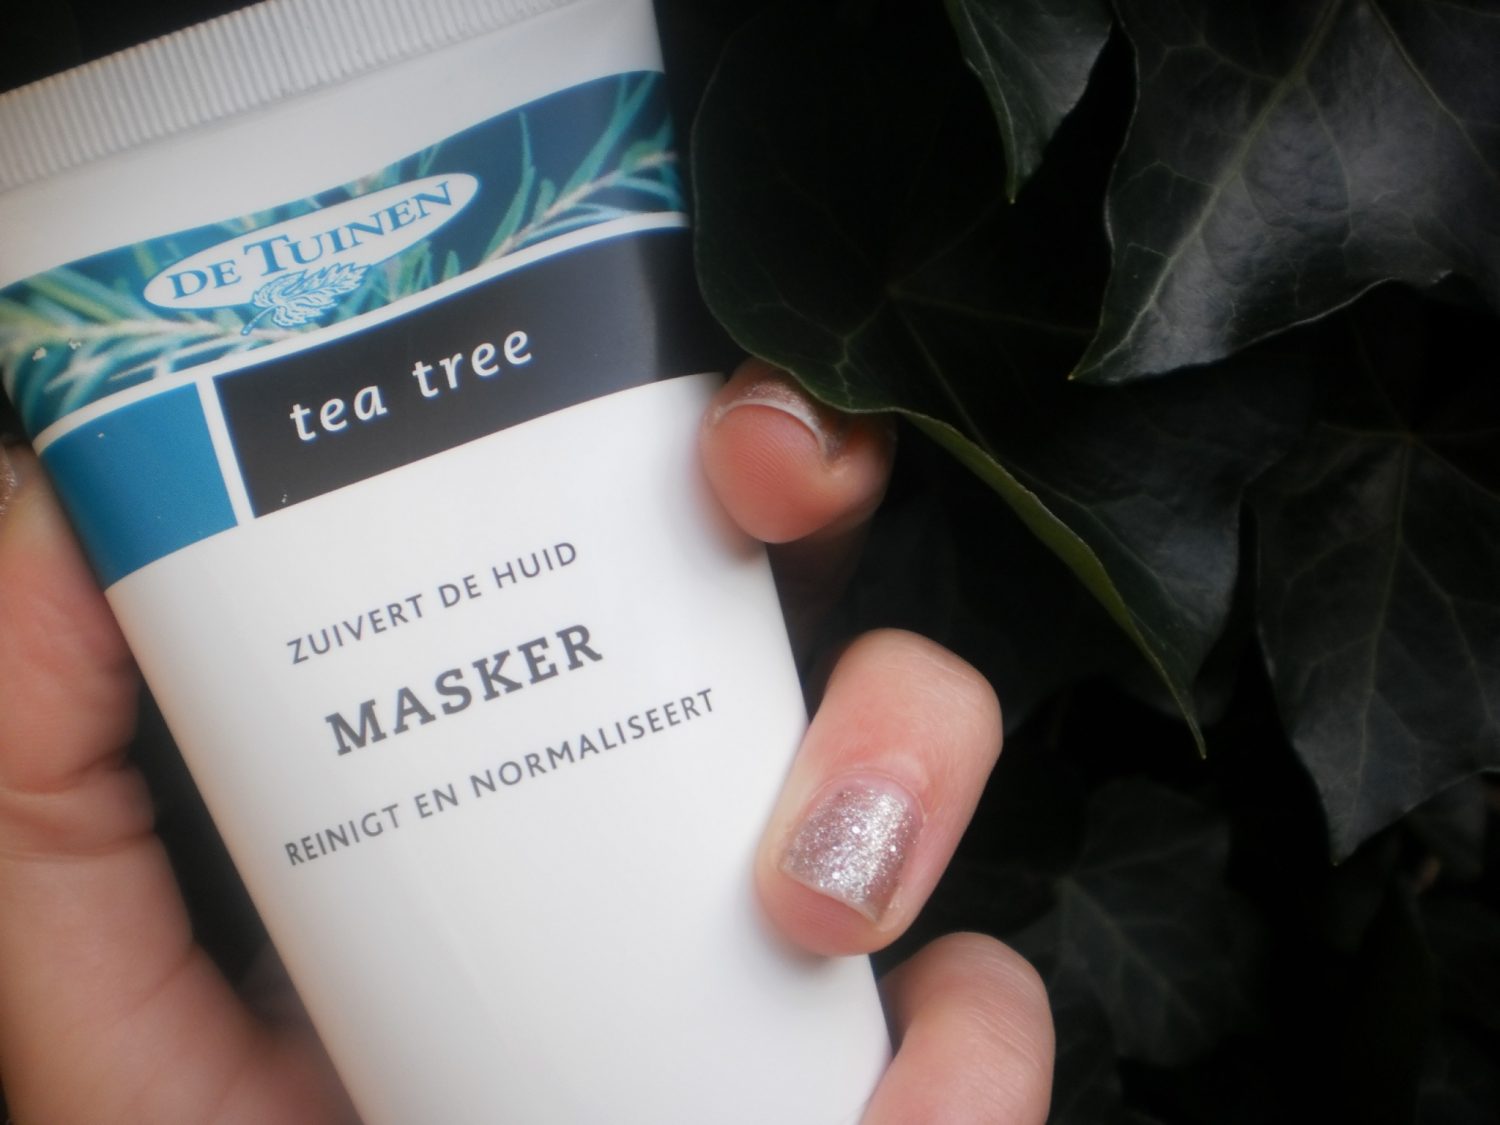 Review: De tuinen Tea Tree masker